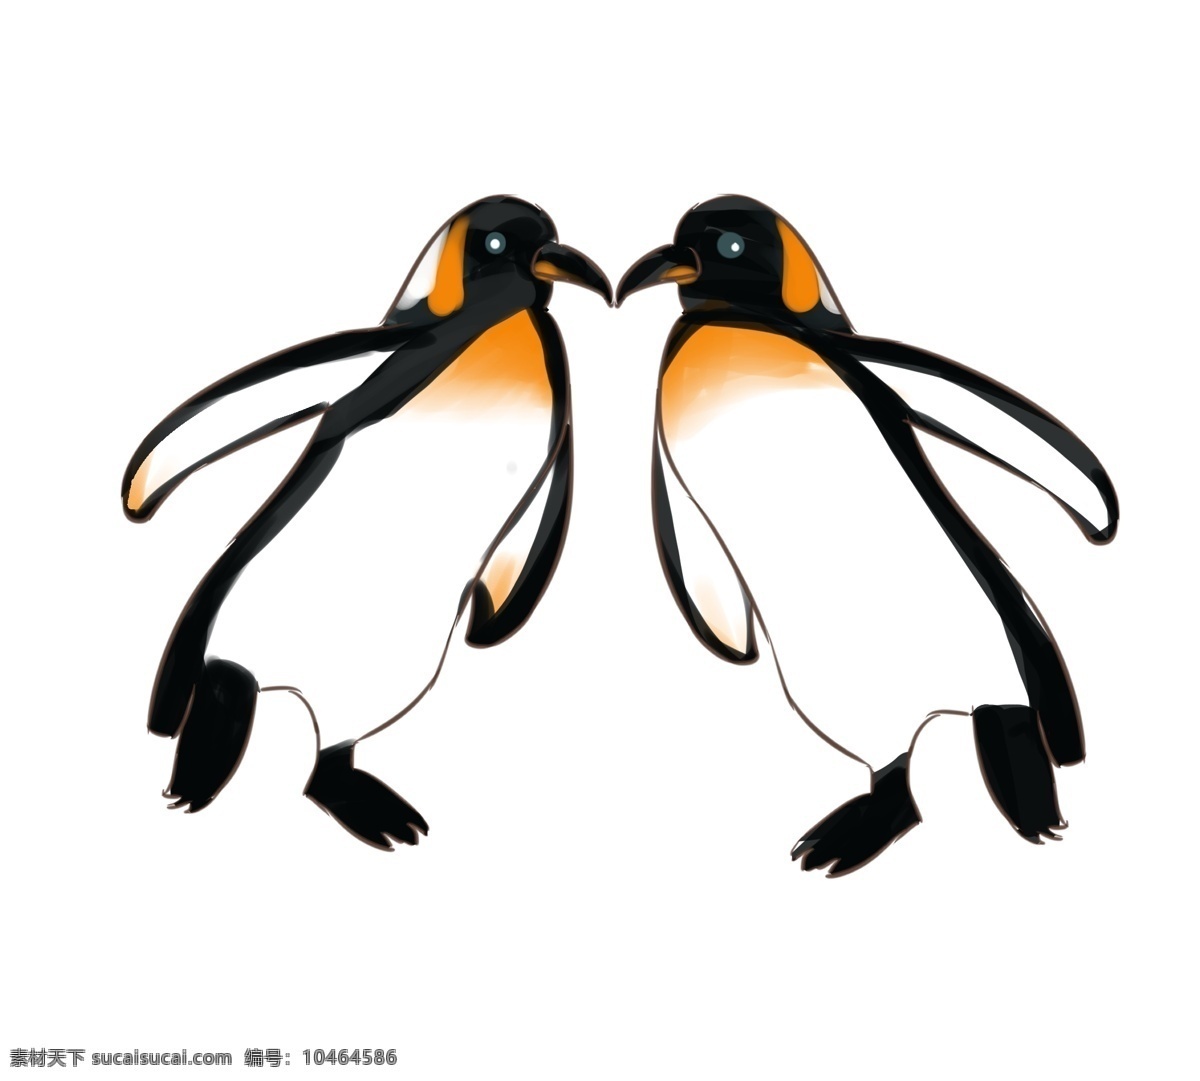 卡通 企鹅 插画 卡通企鹅 手绘企鹅插画 手绘插画 企鹅素材 企鹅元素 可爱企鹅 矢量卡通企鹅 卡通矢量企鹅 小企鹅 企鹅简笔画 卡通素材 矢量素材 矢量企鹅 手绘企鹅 企鹅插画 可爱卡通 可爱卡通企鹅 漫画企鹅 卡通设计